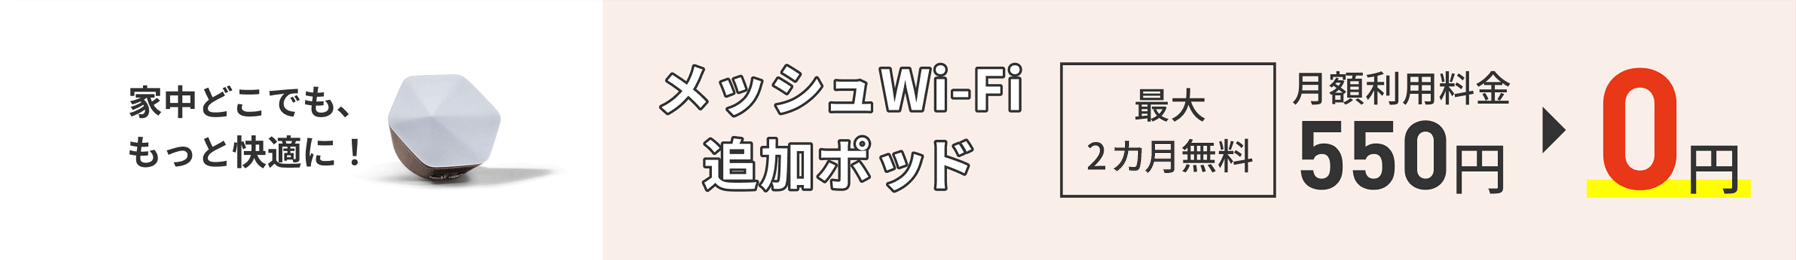 家中どこでも、もっと快適に！ メッシュWi-Fi追加ポッド 最大2カ月無料 月額利用料金550円→0円